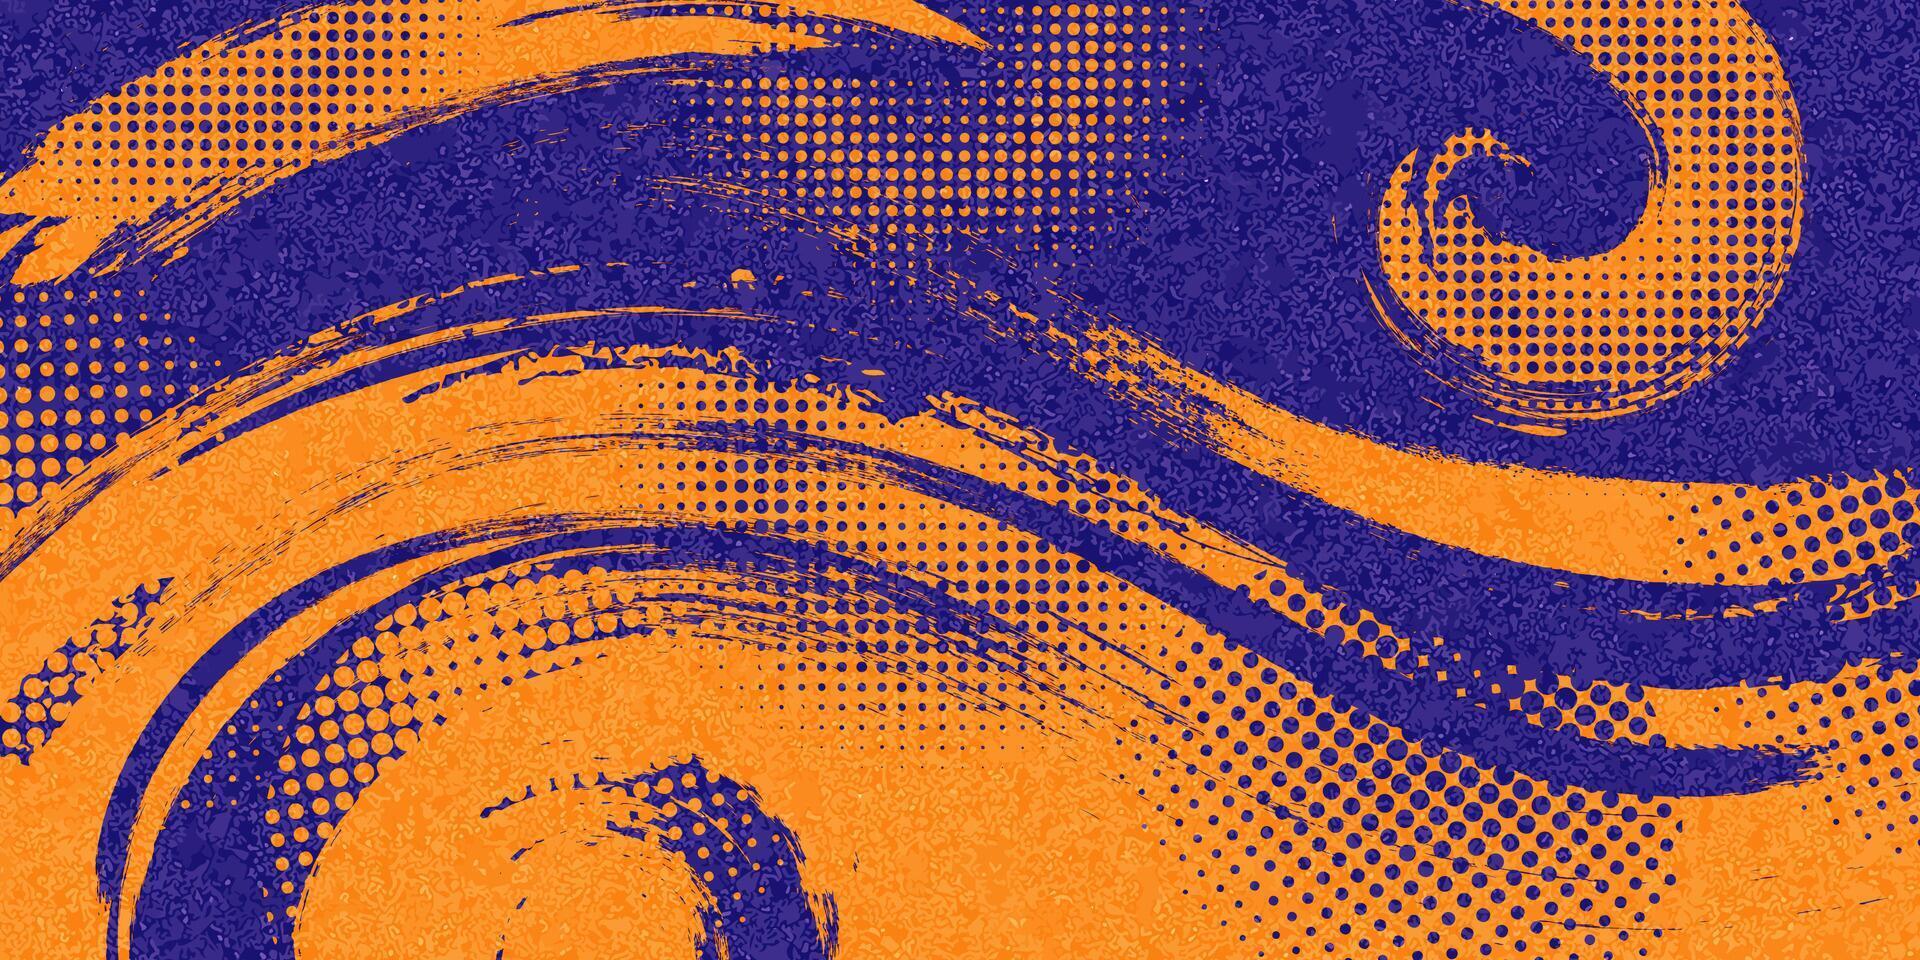 abstrakt sporter bakgrund med blå och orange borsta textur och halvton effekt. retro grunge bakgrund för baner eller affisch design vektor